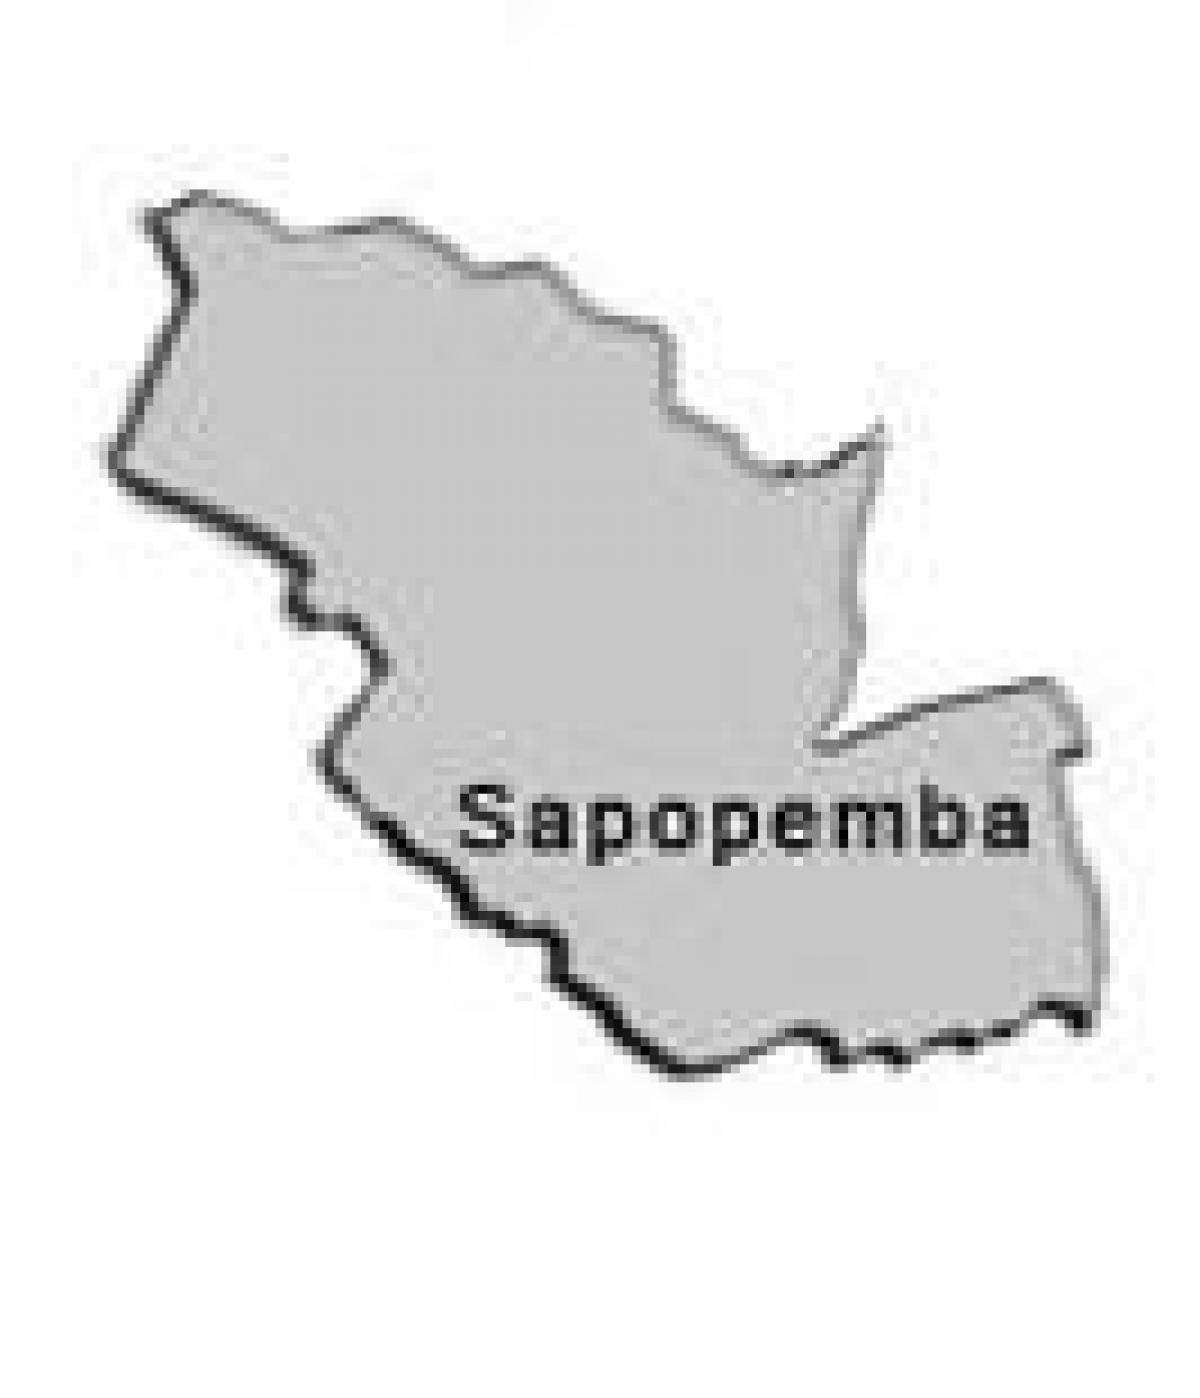 Քարտեզ супрефектур Sapopembra